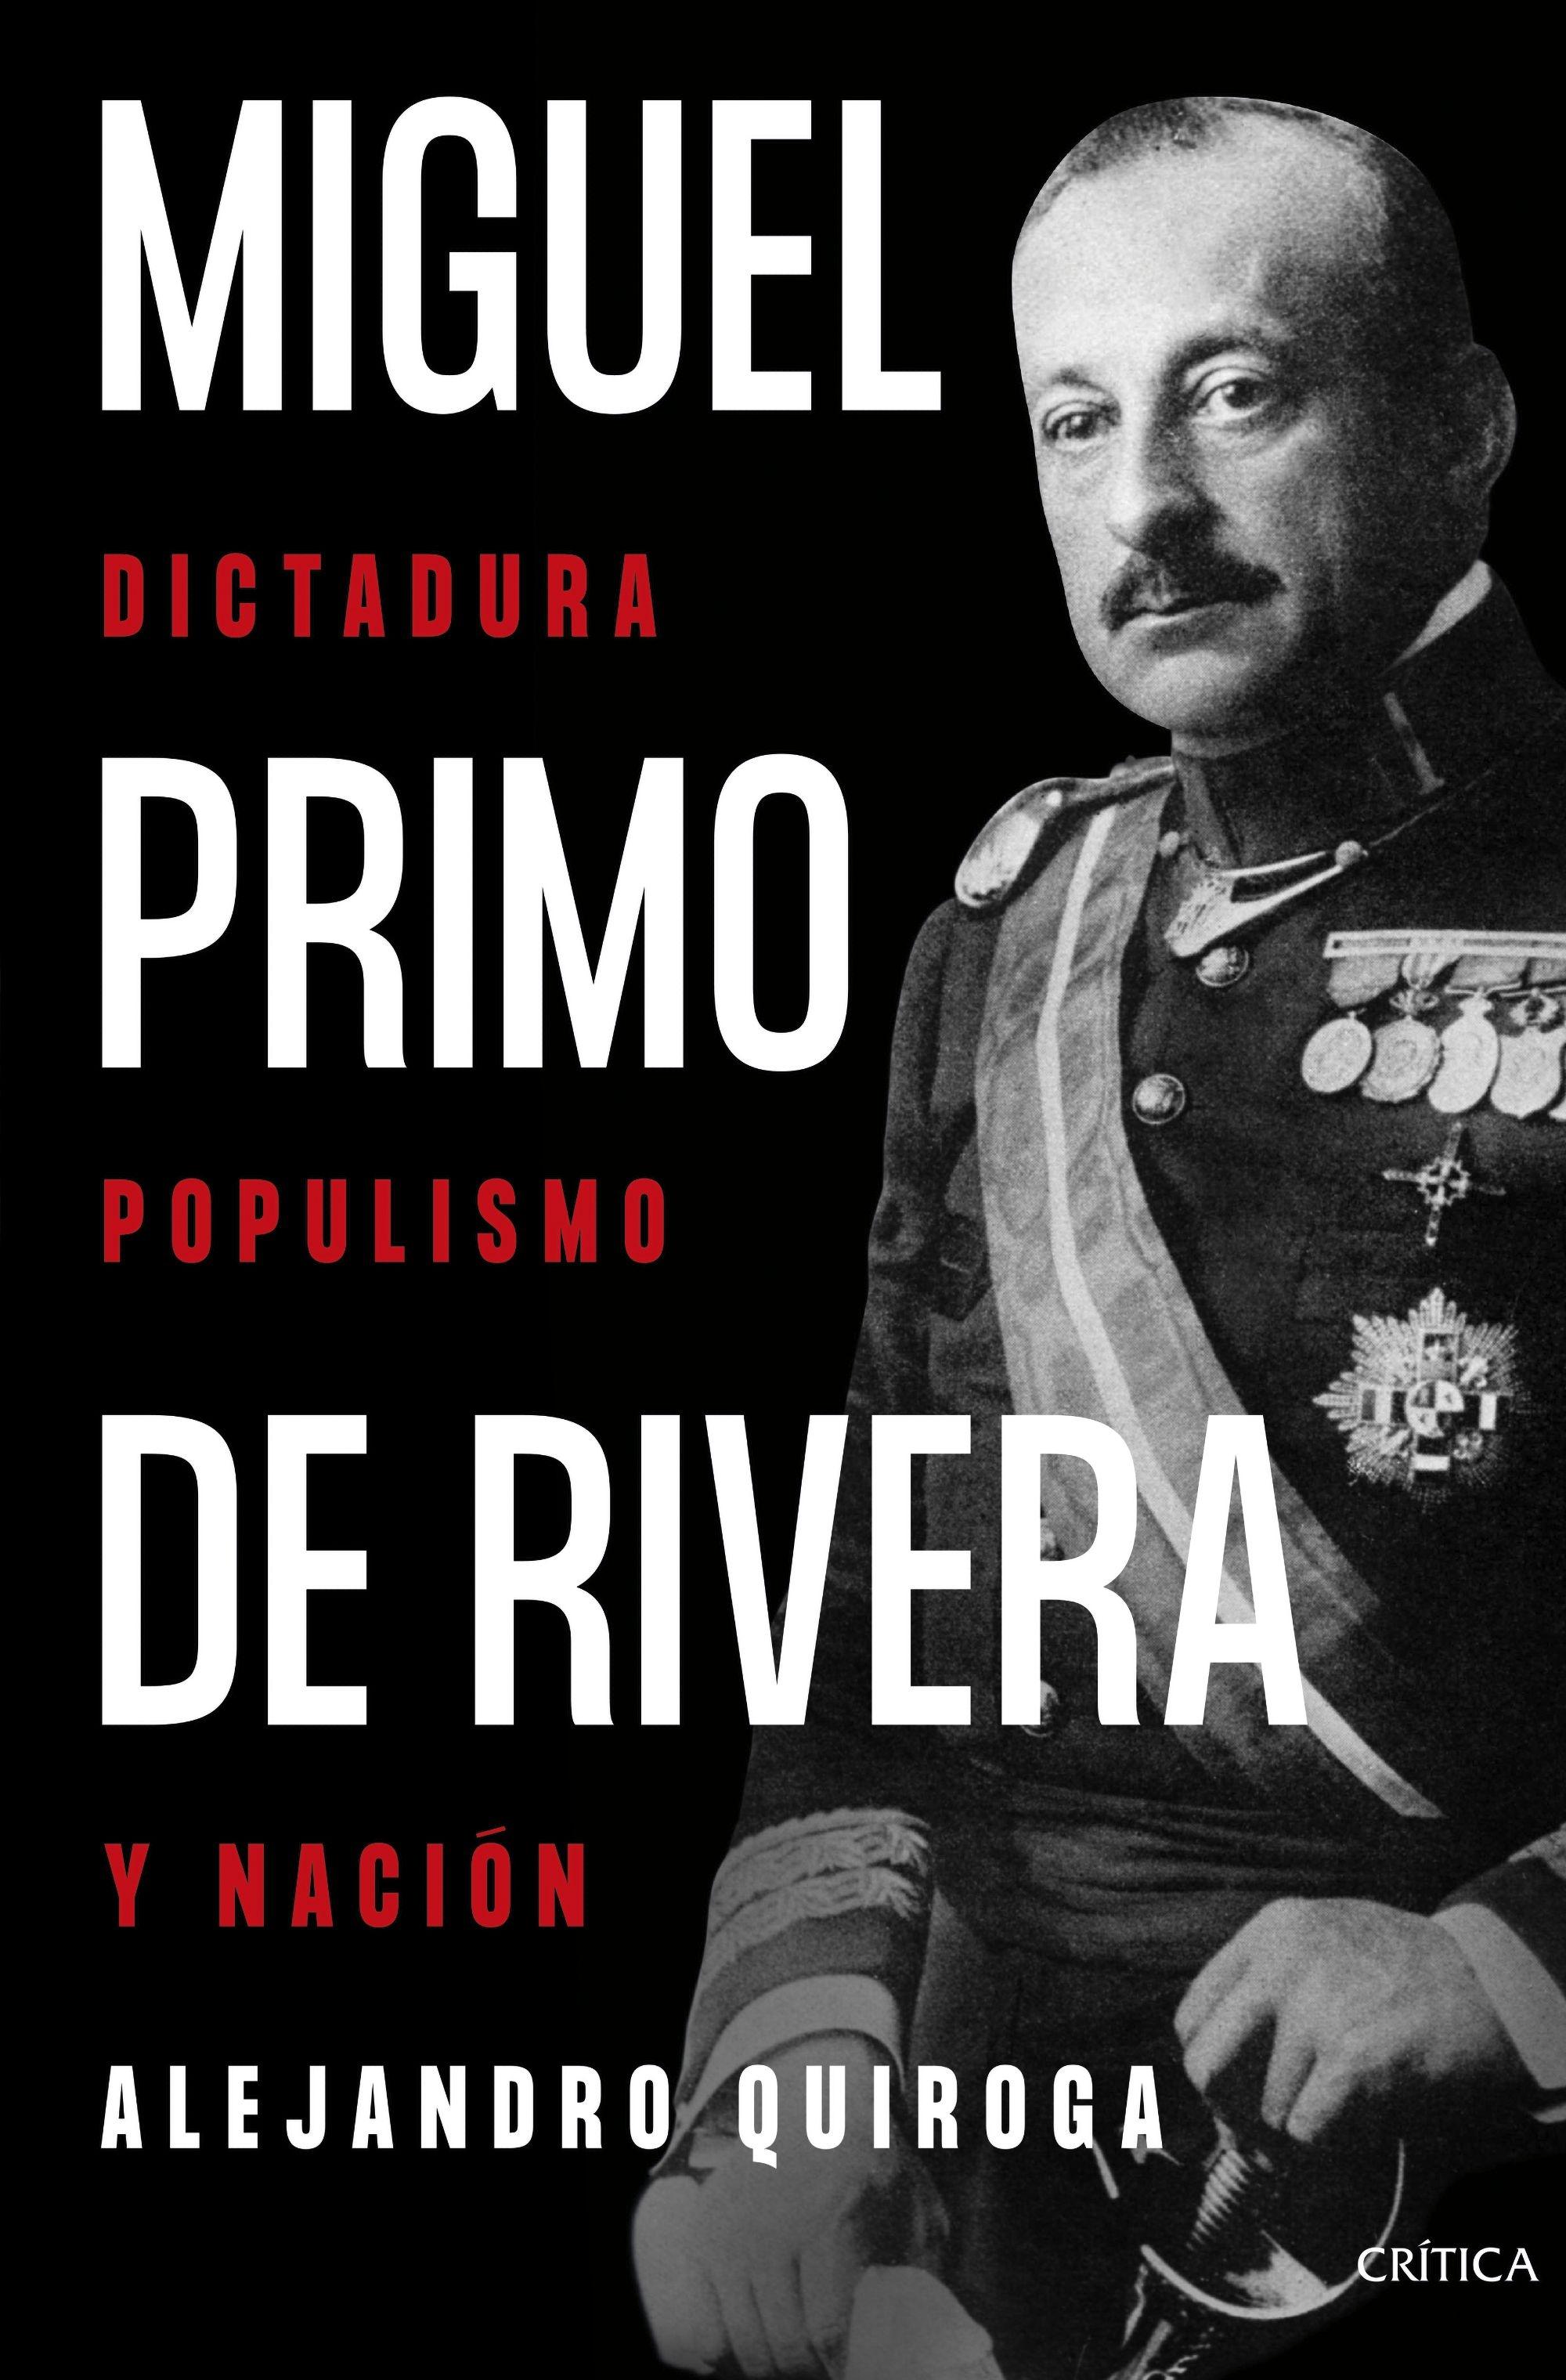 Miguel Primo de Rivera "Dictadura, Populismo y Nación". 